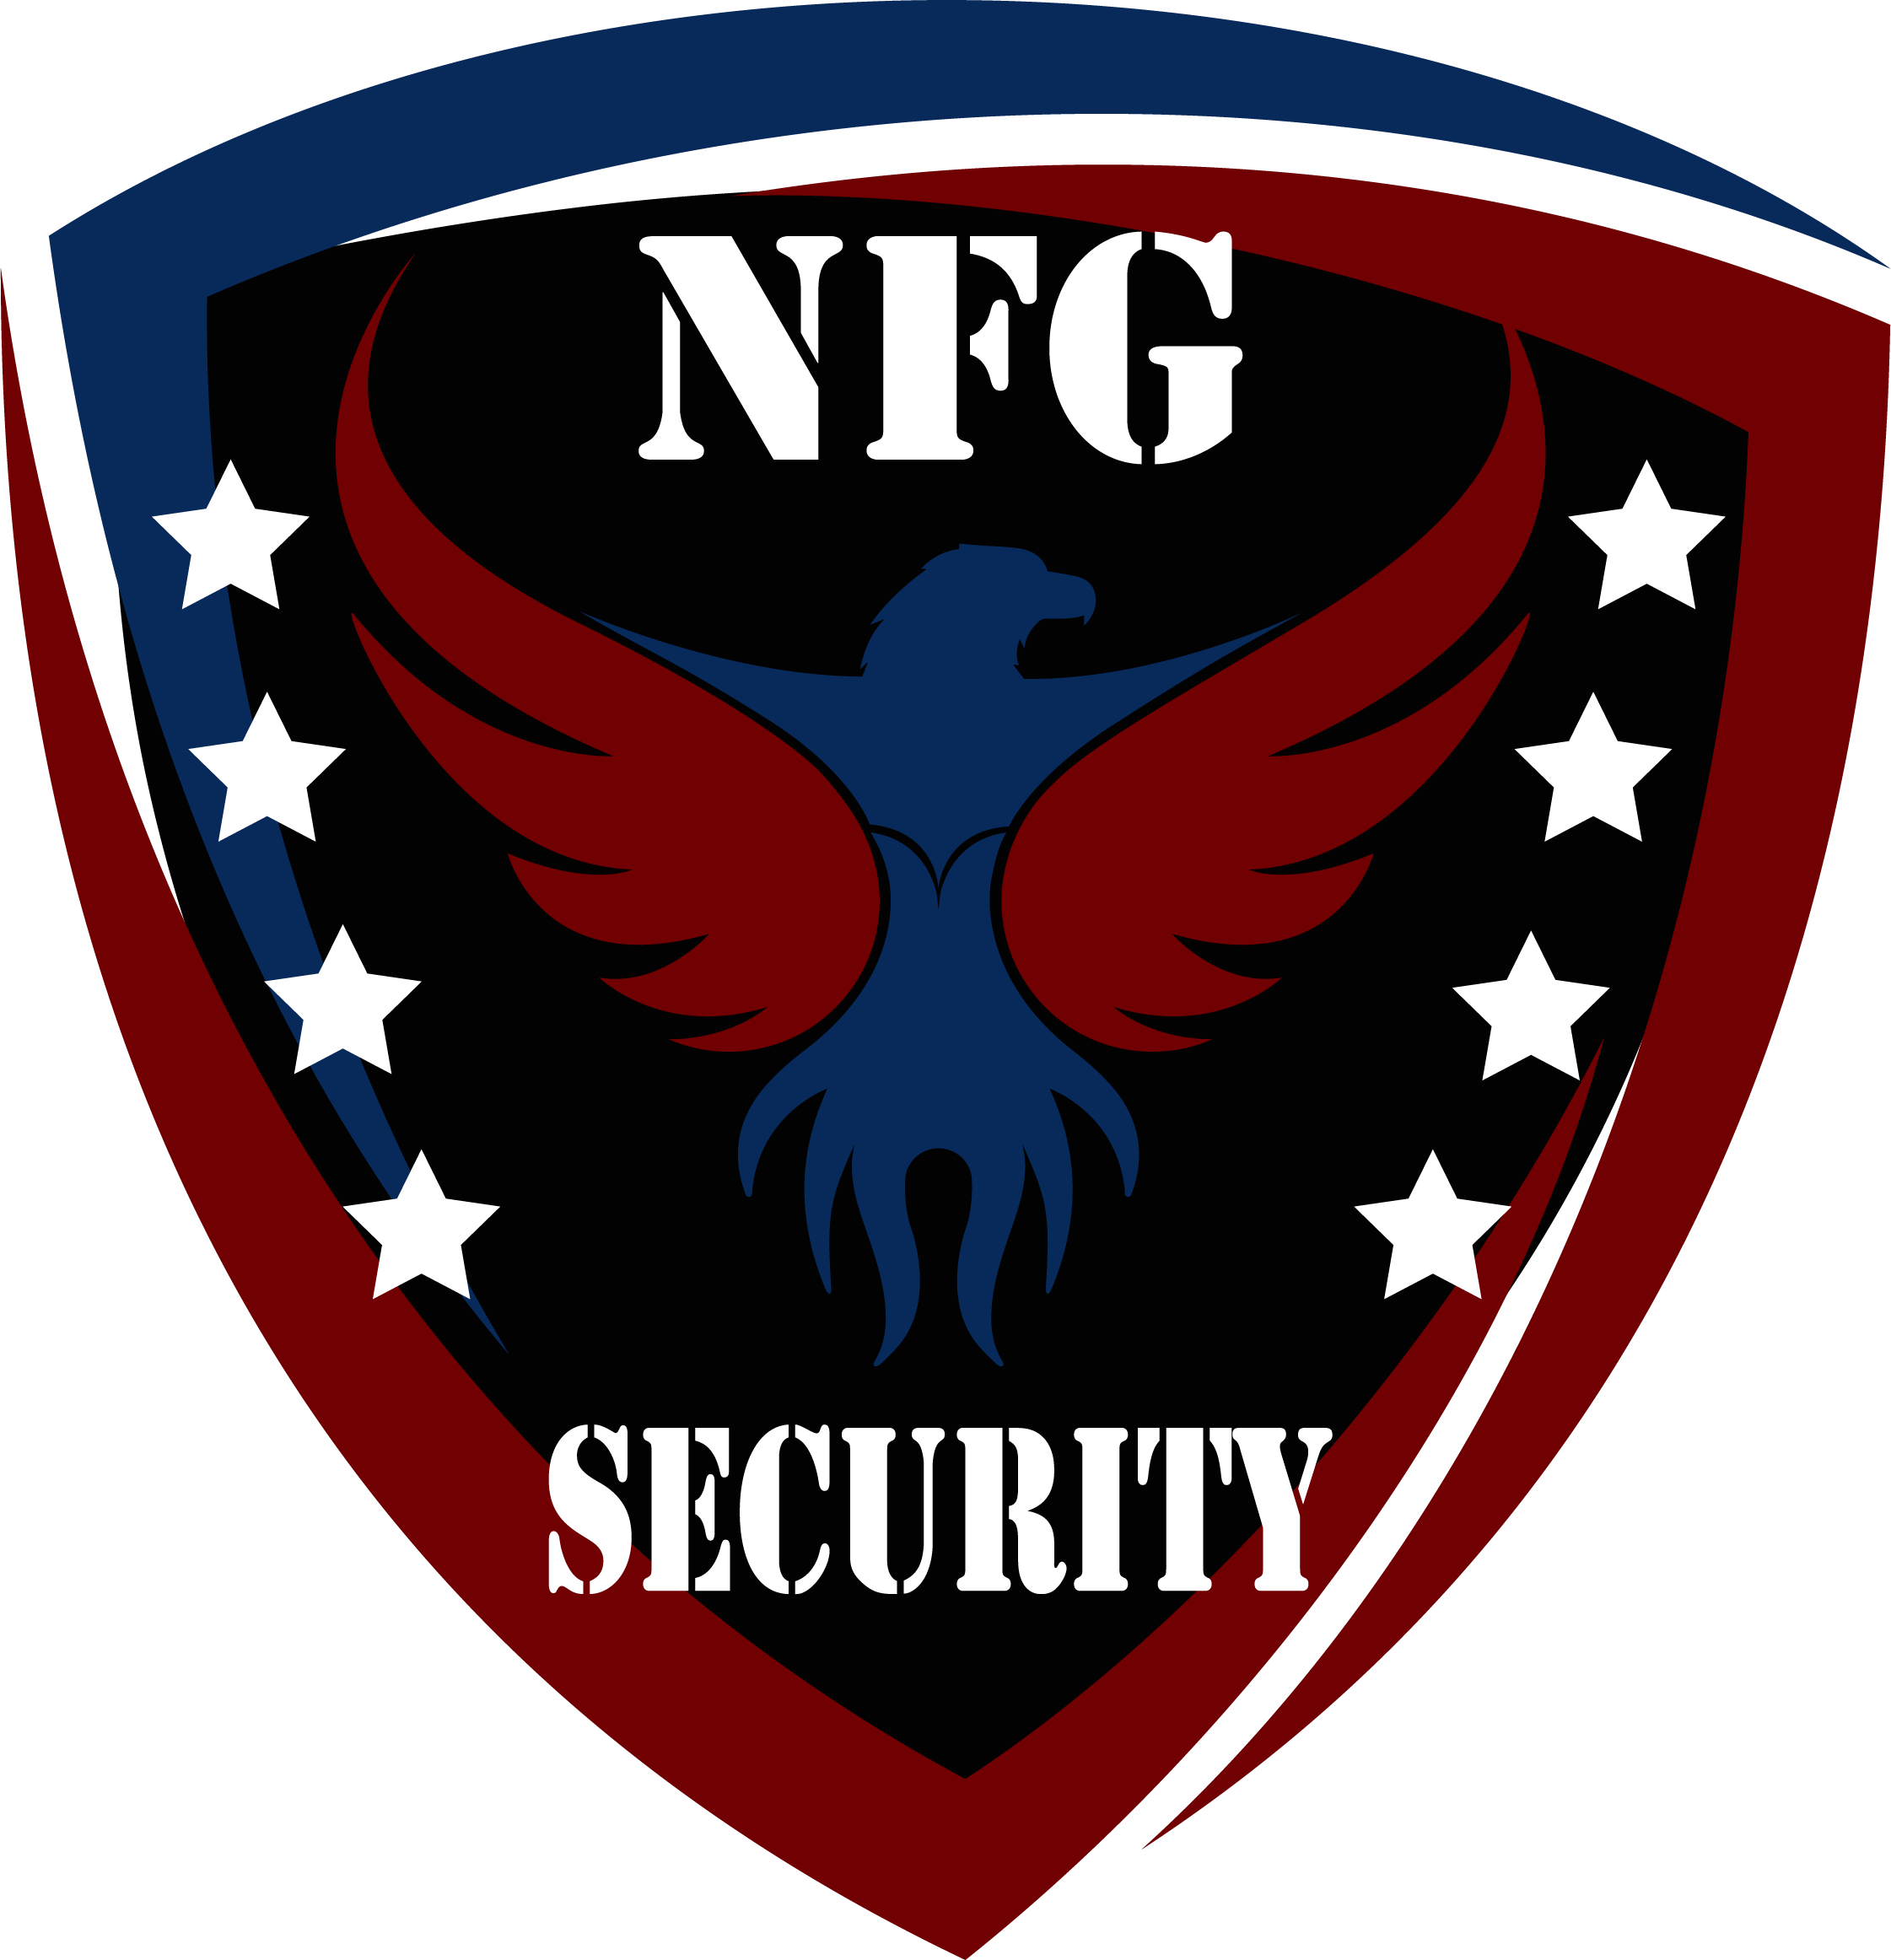 NFG Security